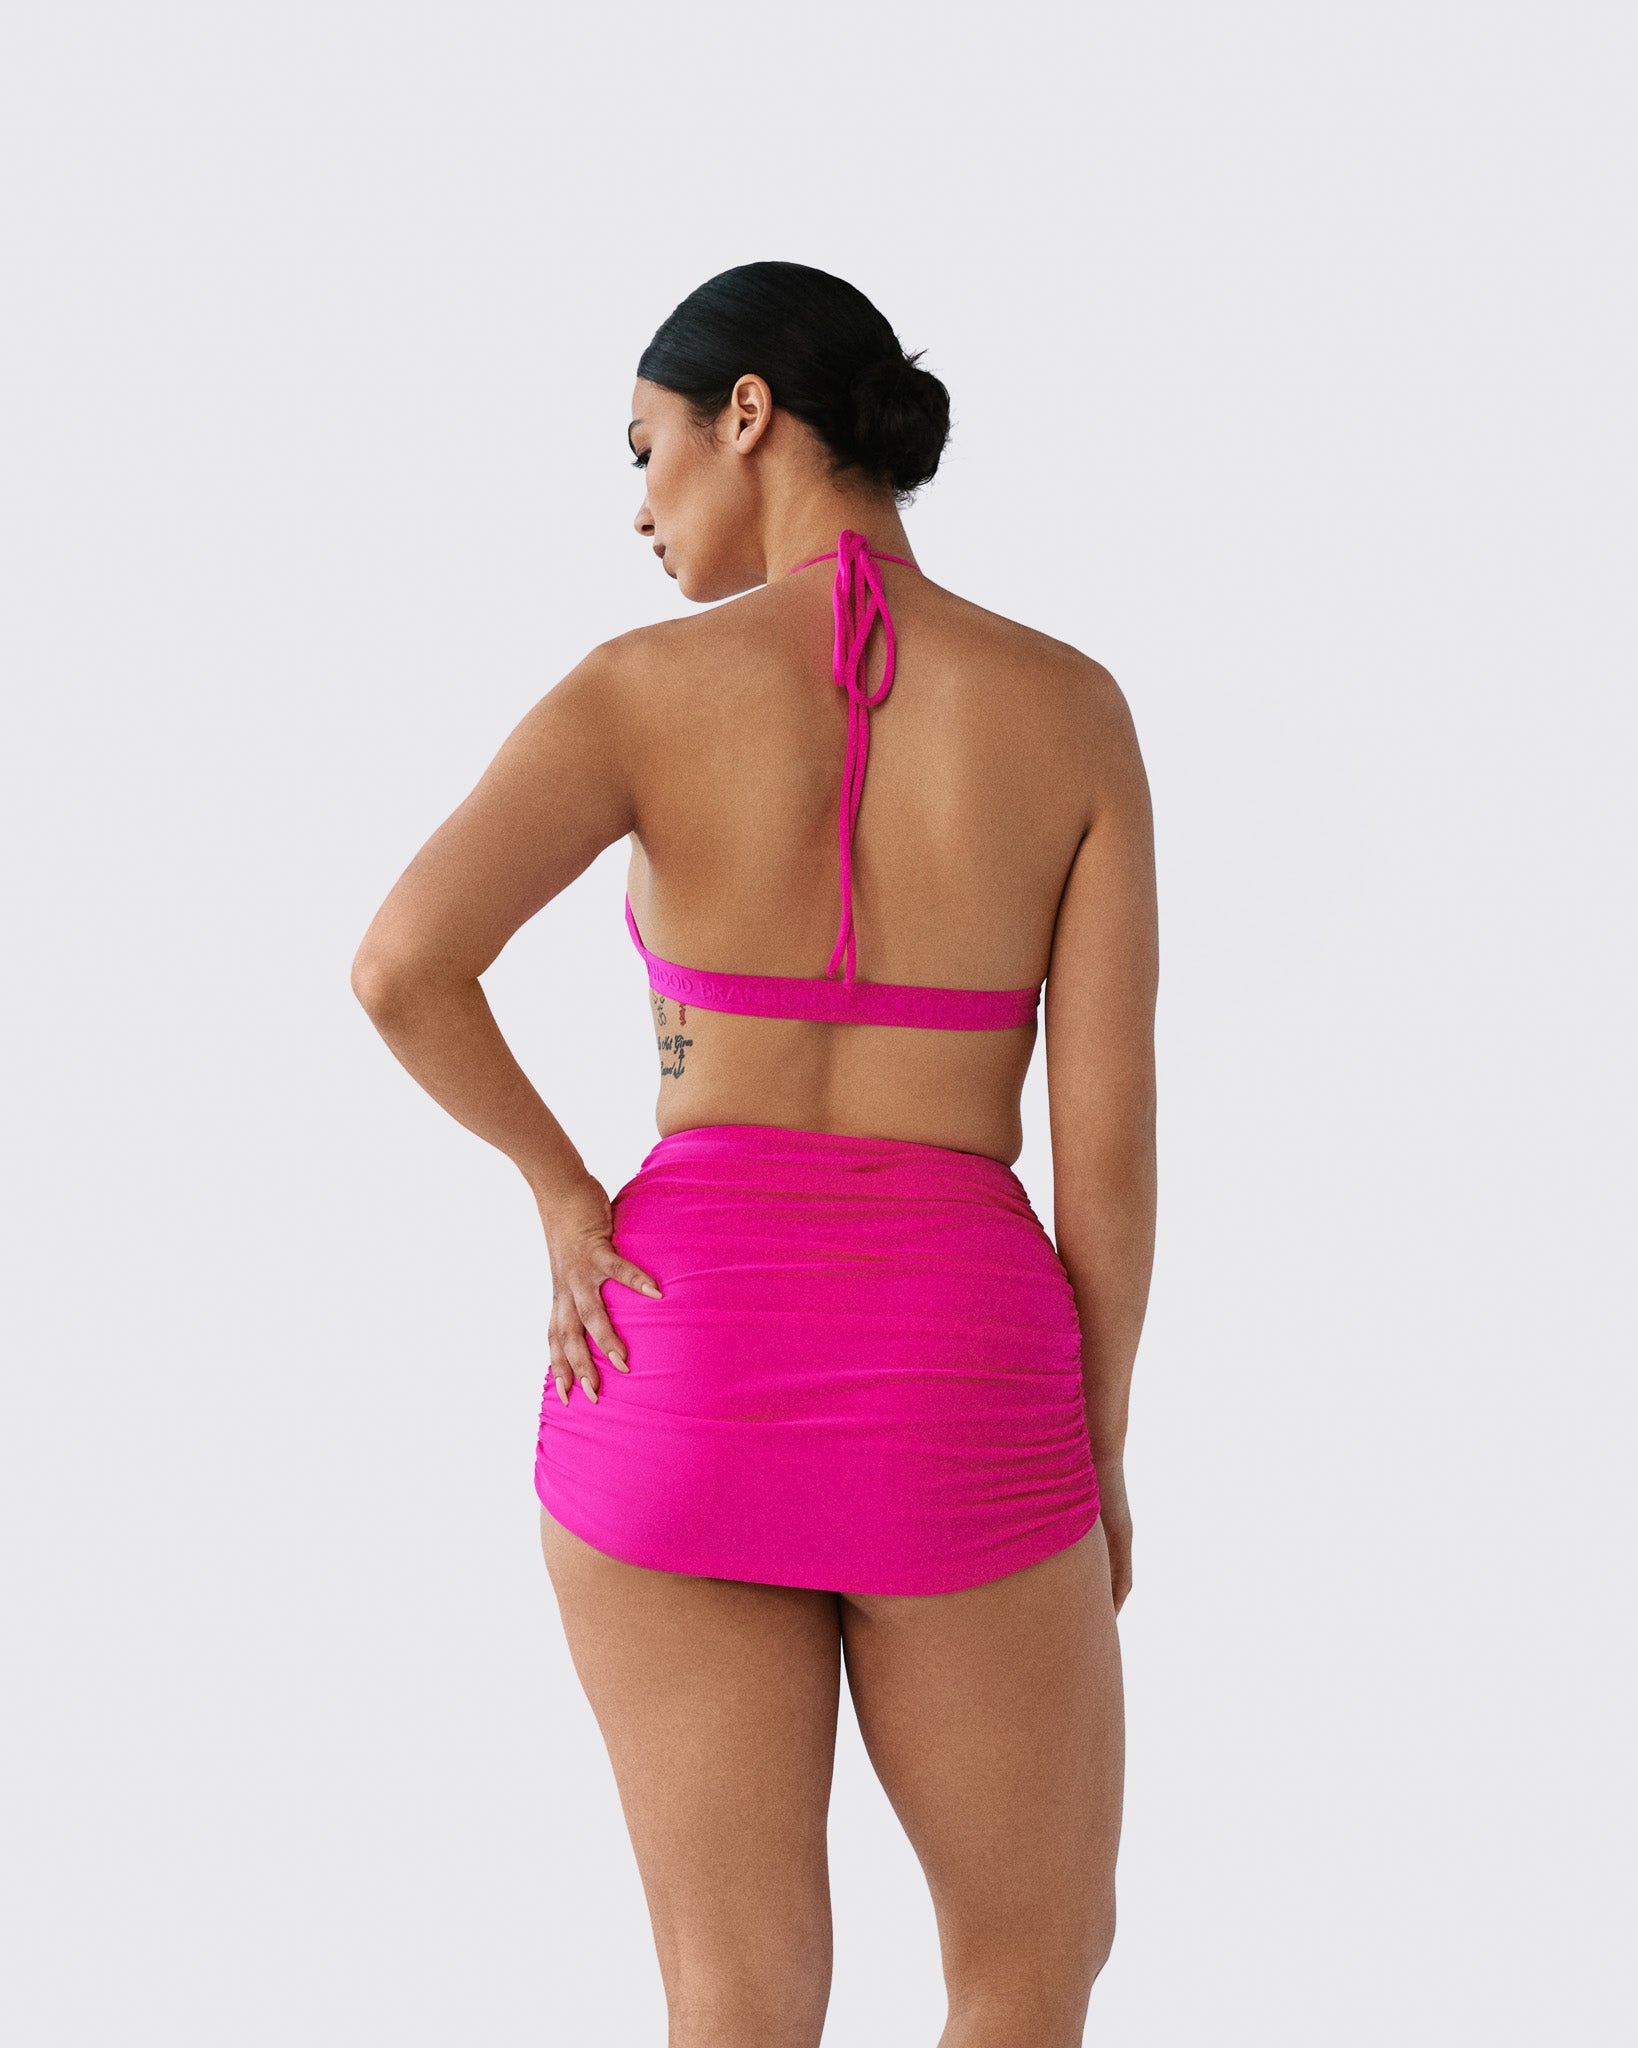 2Bamboo Pink halter Bikini Top Swimwear Beach Summuy size 32B/C